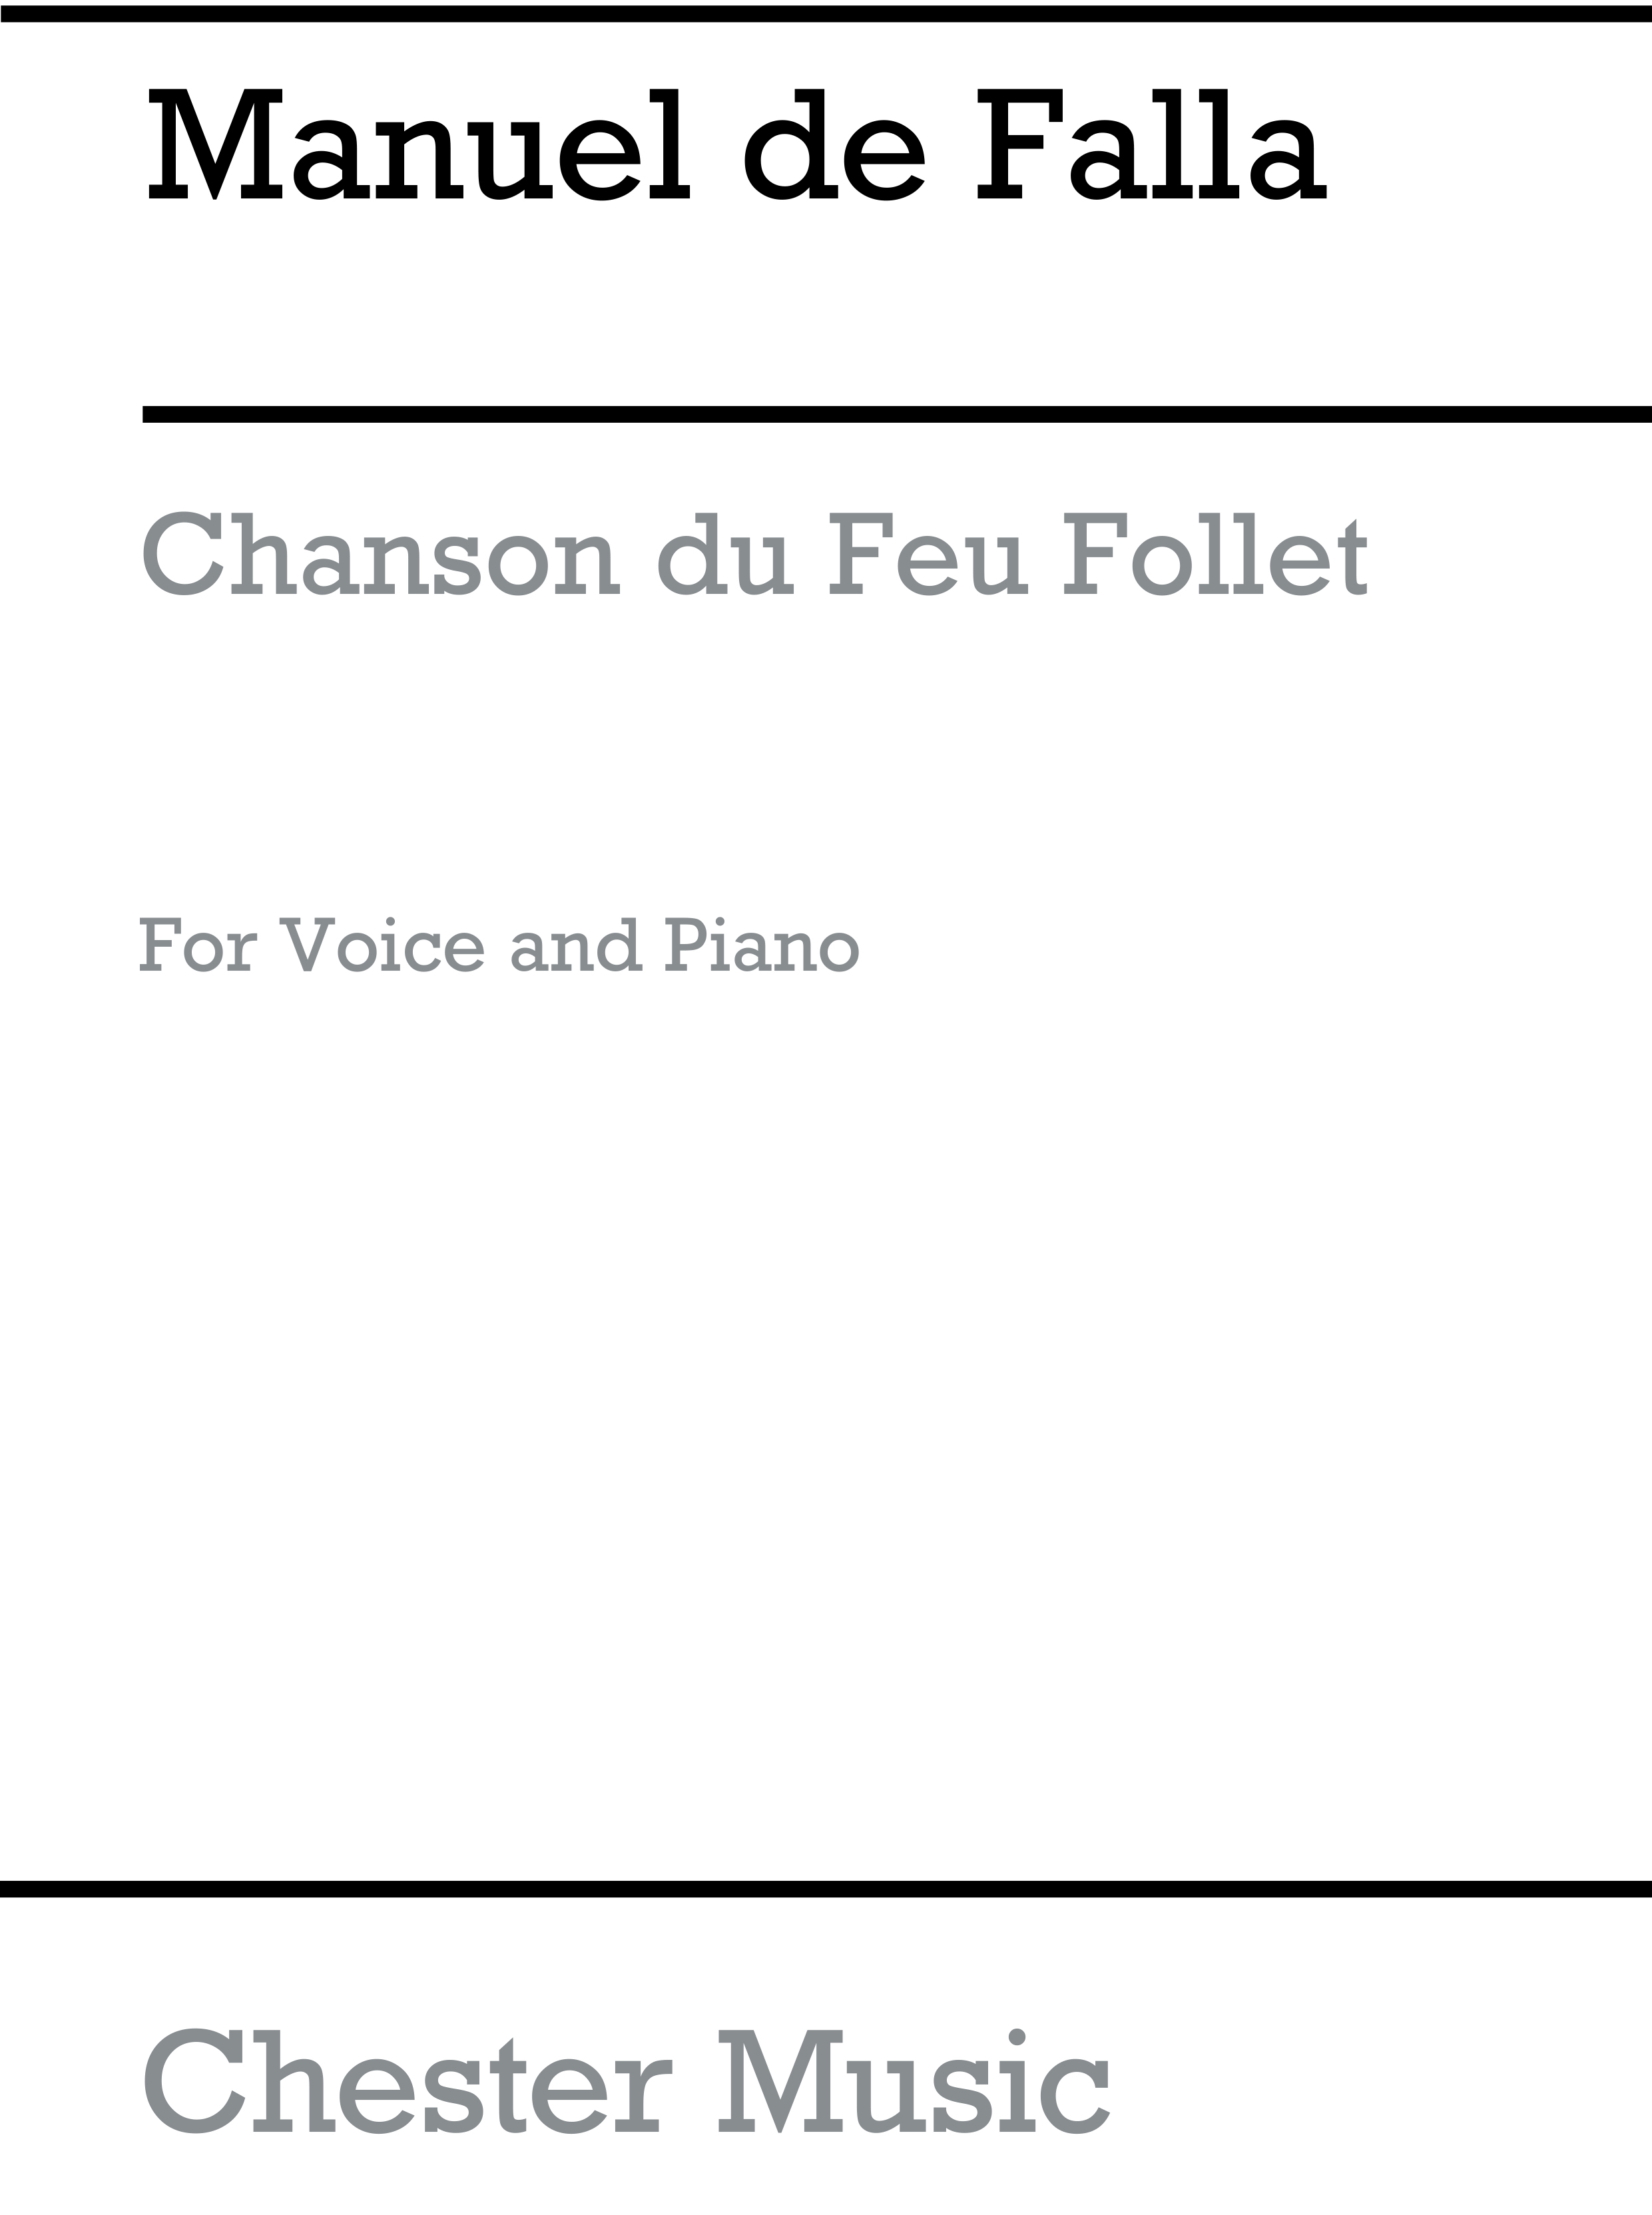 Manuel de Falla: Cancion Del Fuego Fatuo: Voice: Vocal Work